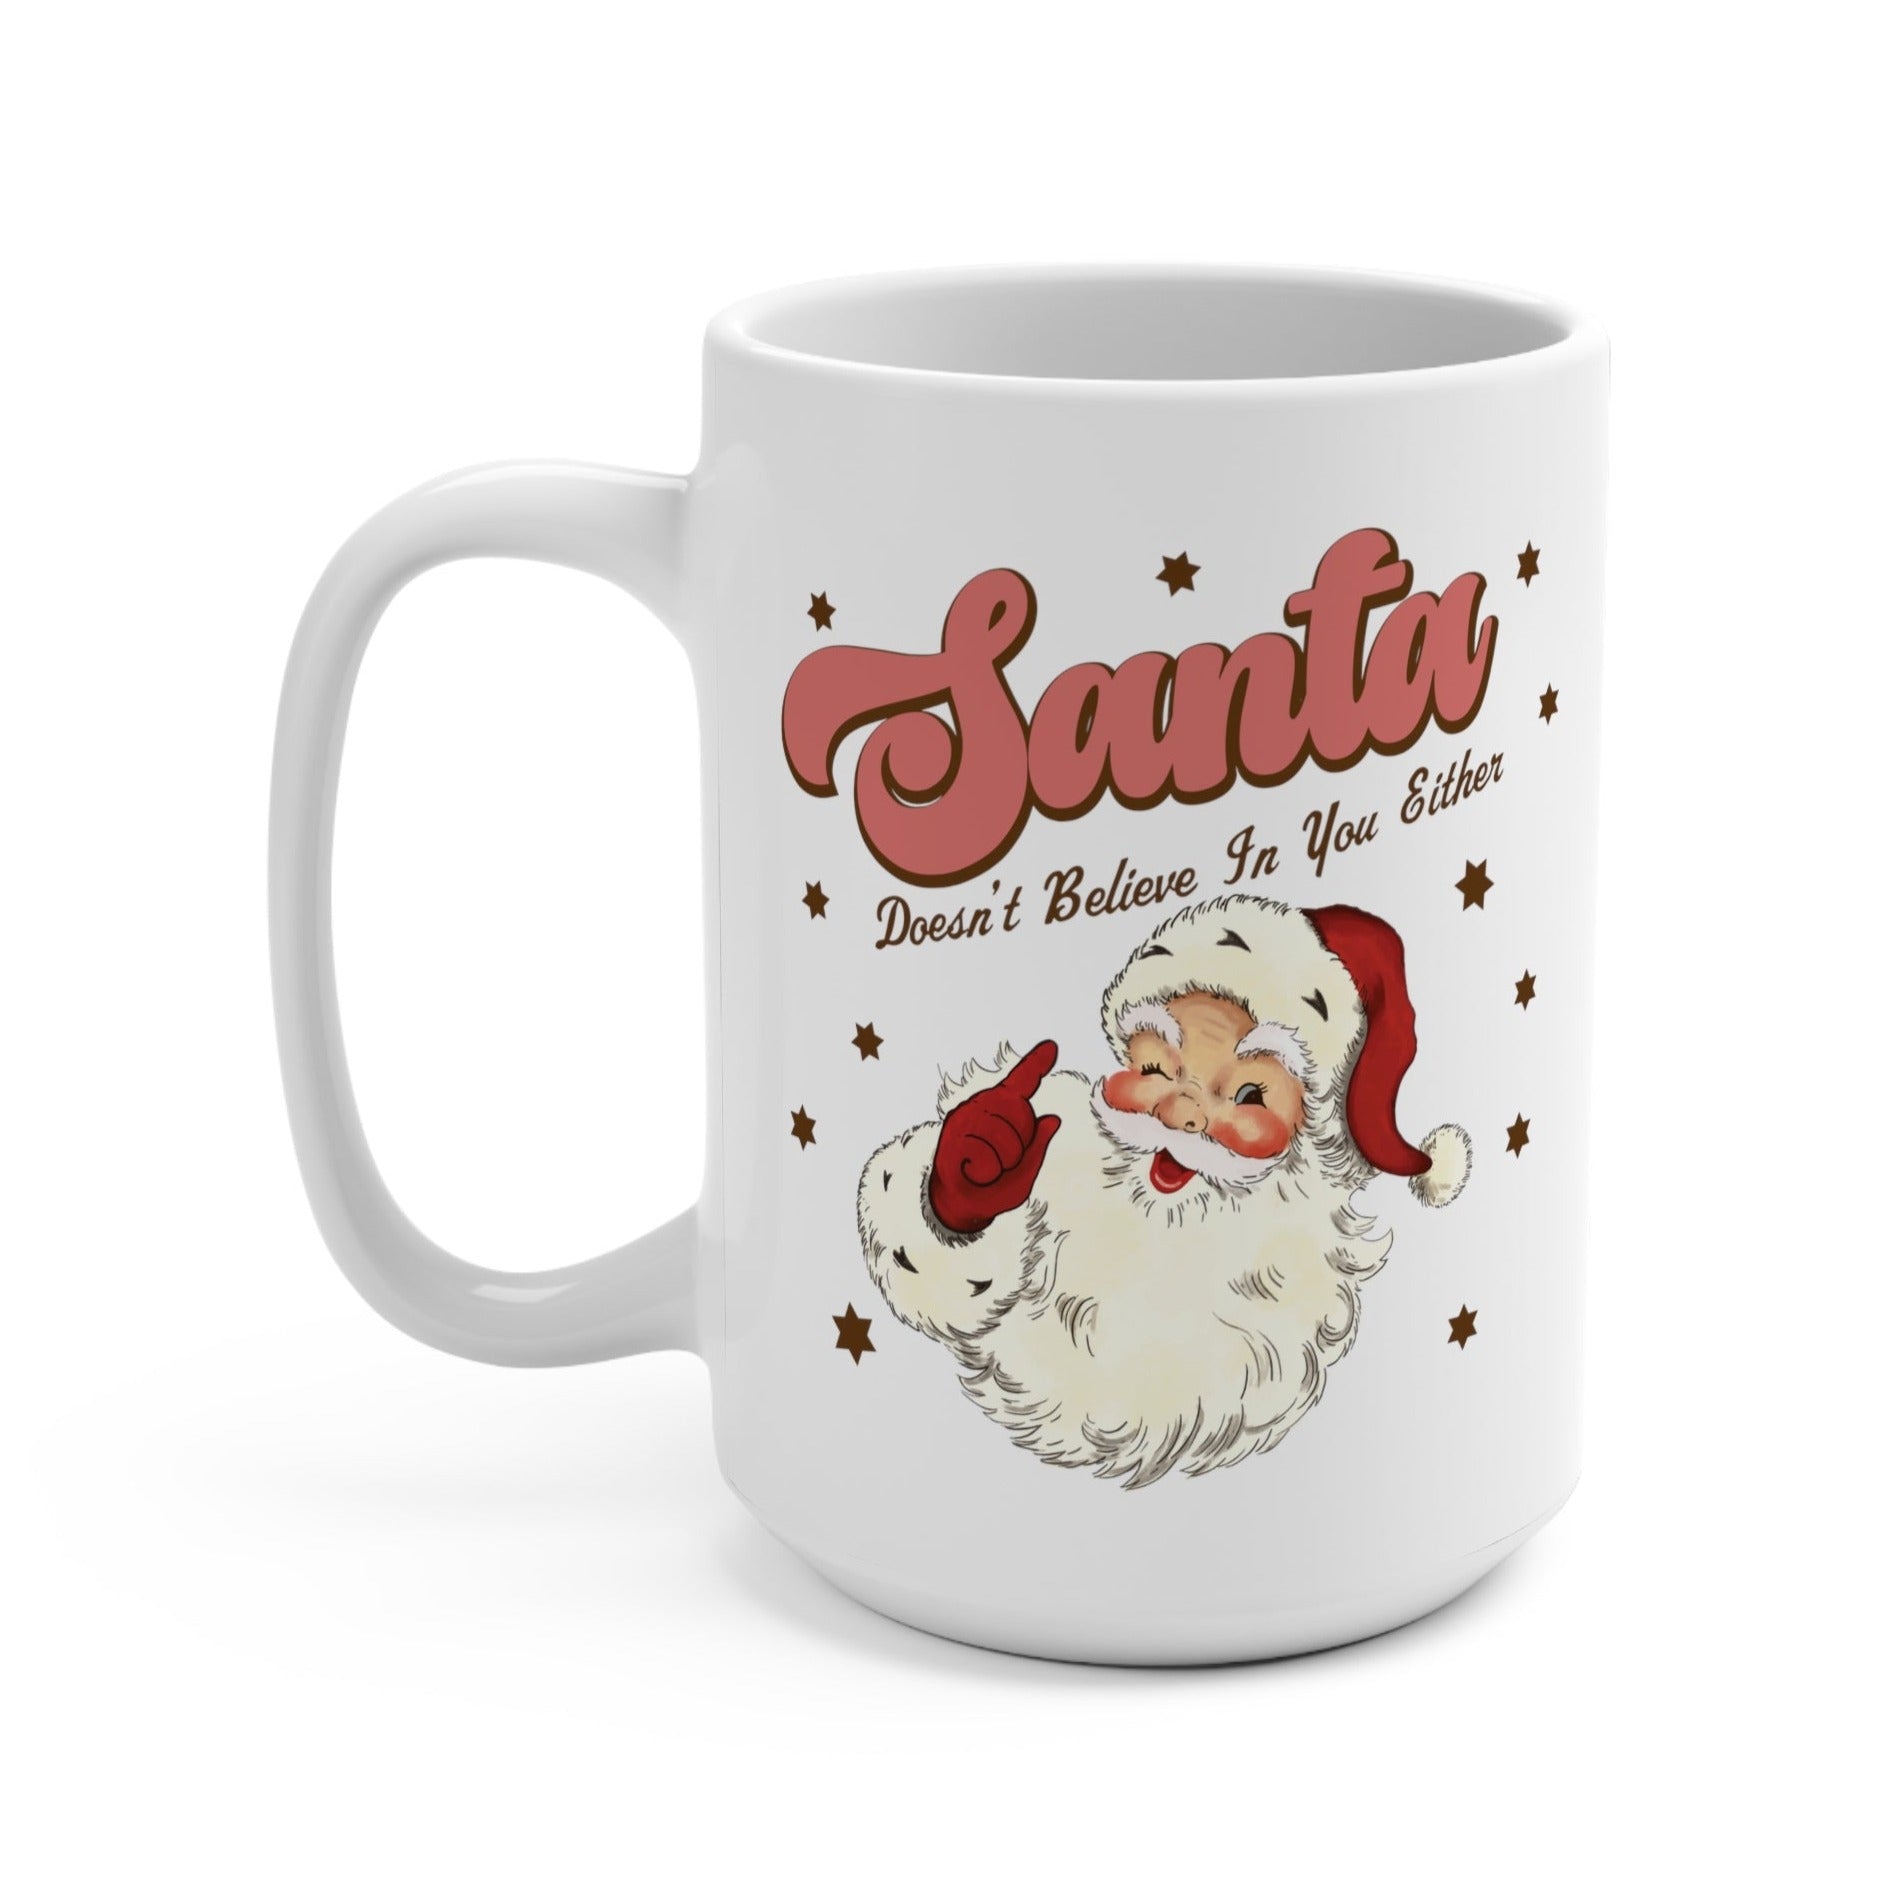 Santa Doesn't Believe in You Either Mug - UntamedEgo LLC.